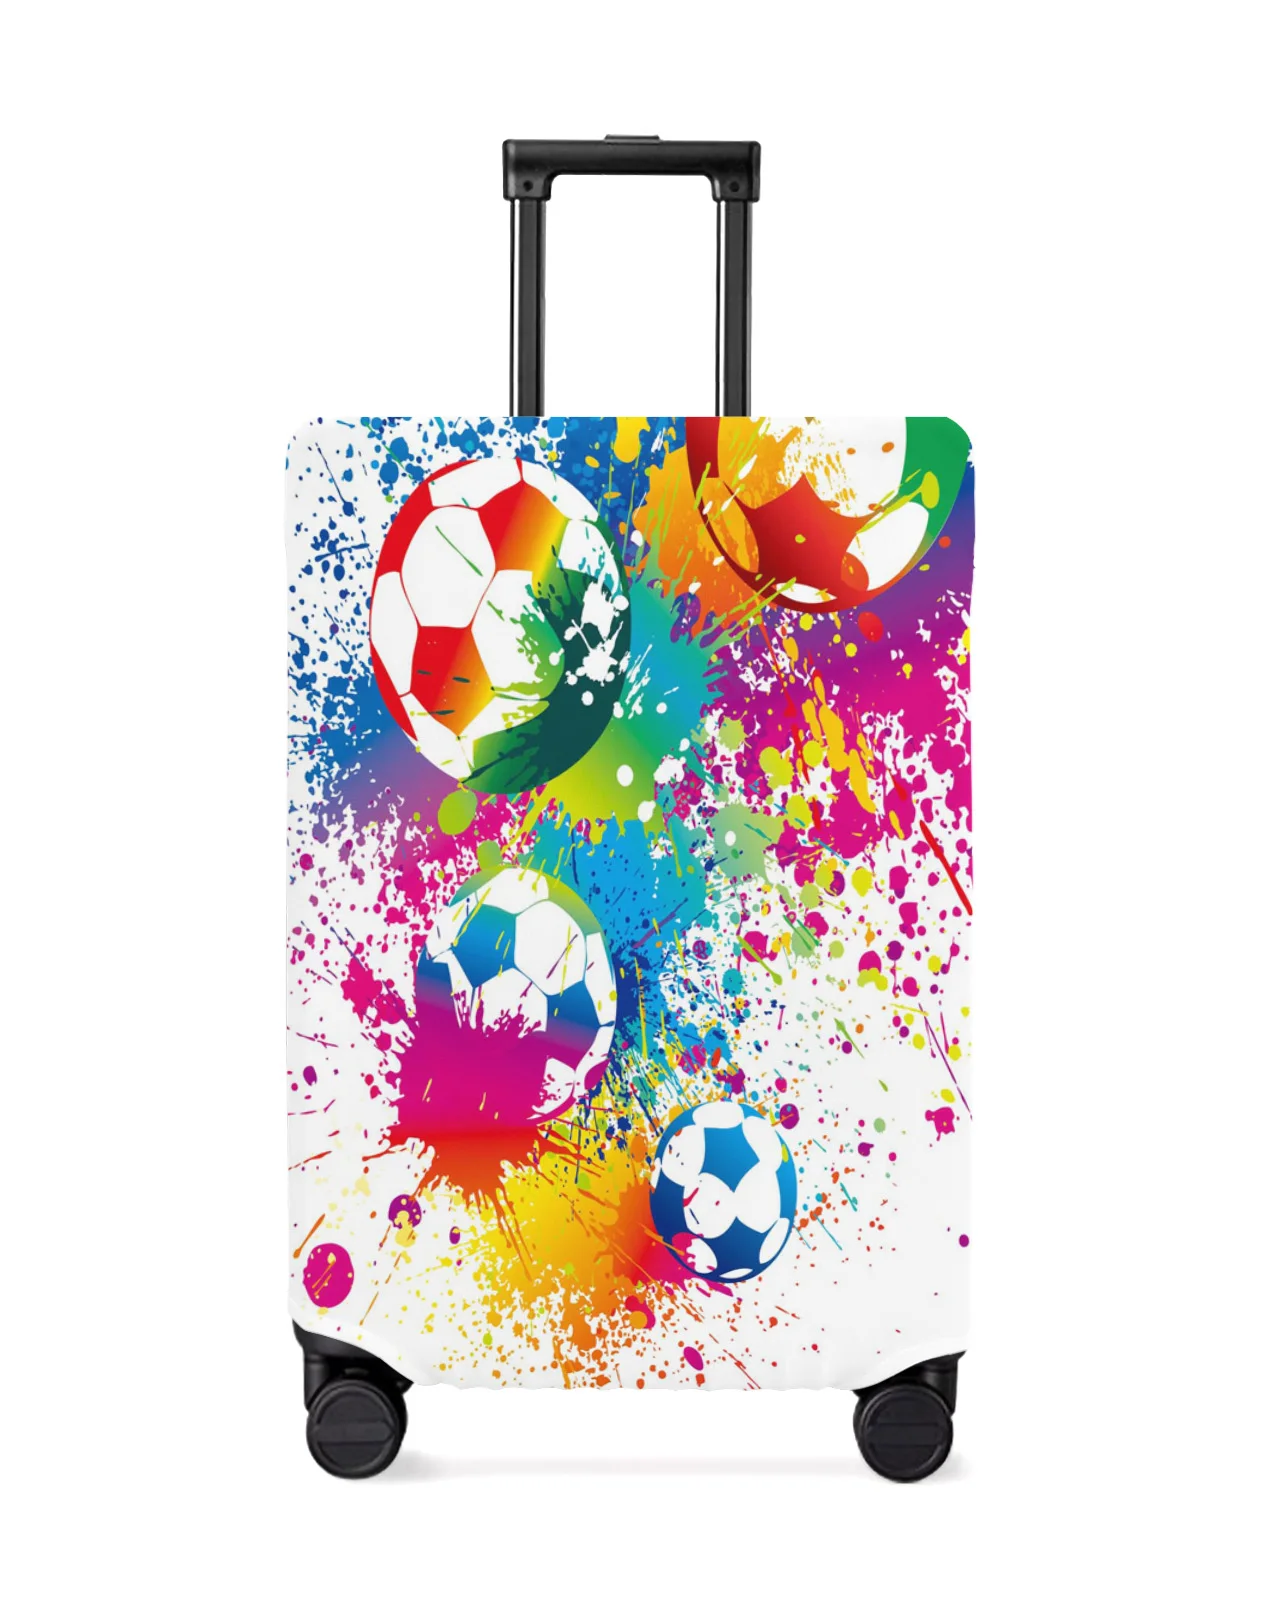 juste-de-bagage-de-voyage-elastique-avec-peinture-de-football-coloree-etui-de-valise-housse-anti-poussiere-art-accessoires-de-voyage